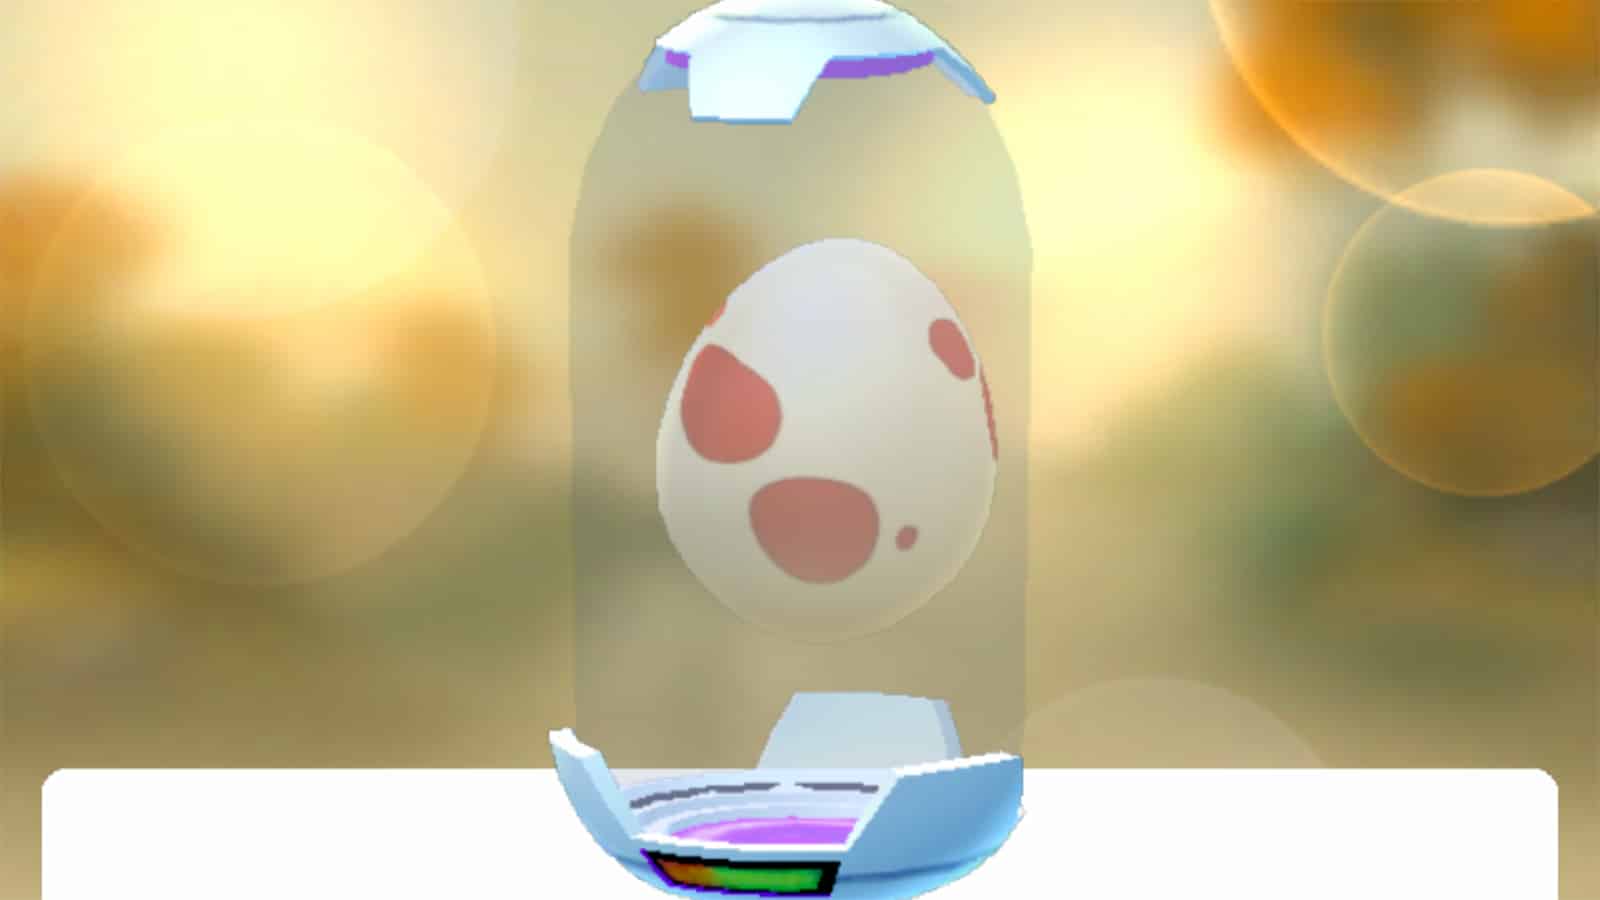 A 12km Egg inside an incubator in Pokemon Go